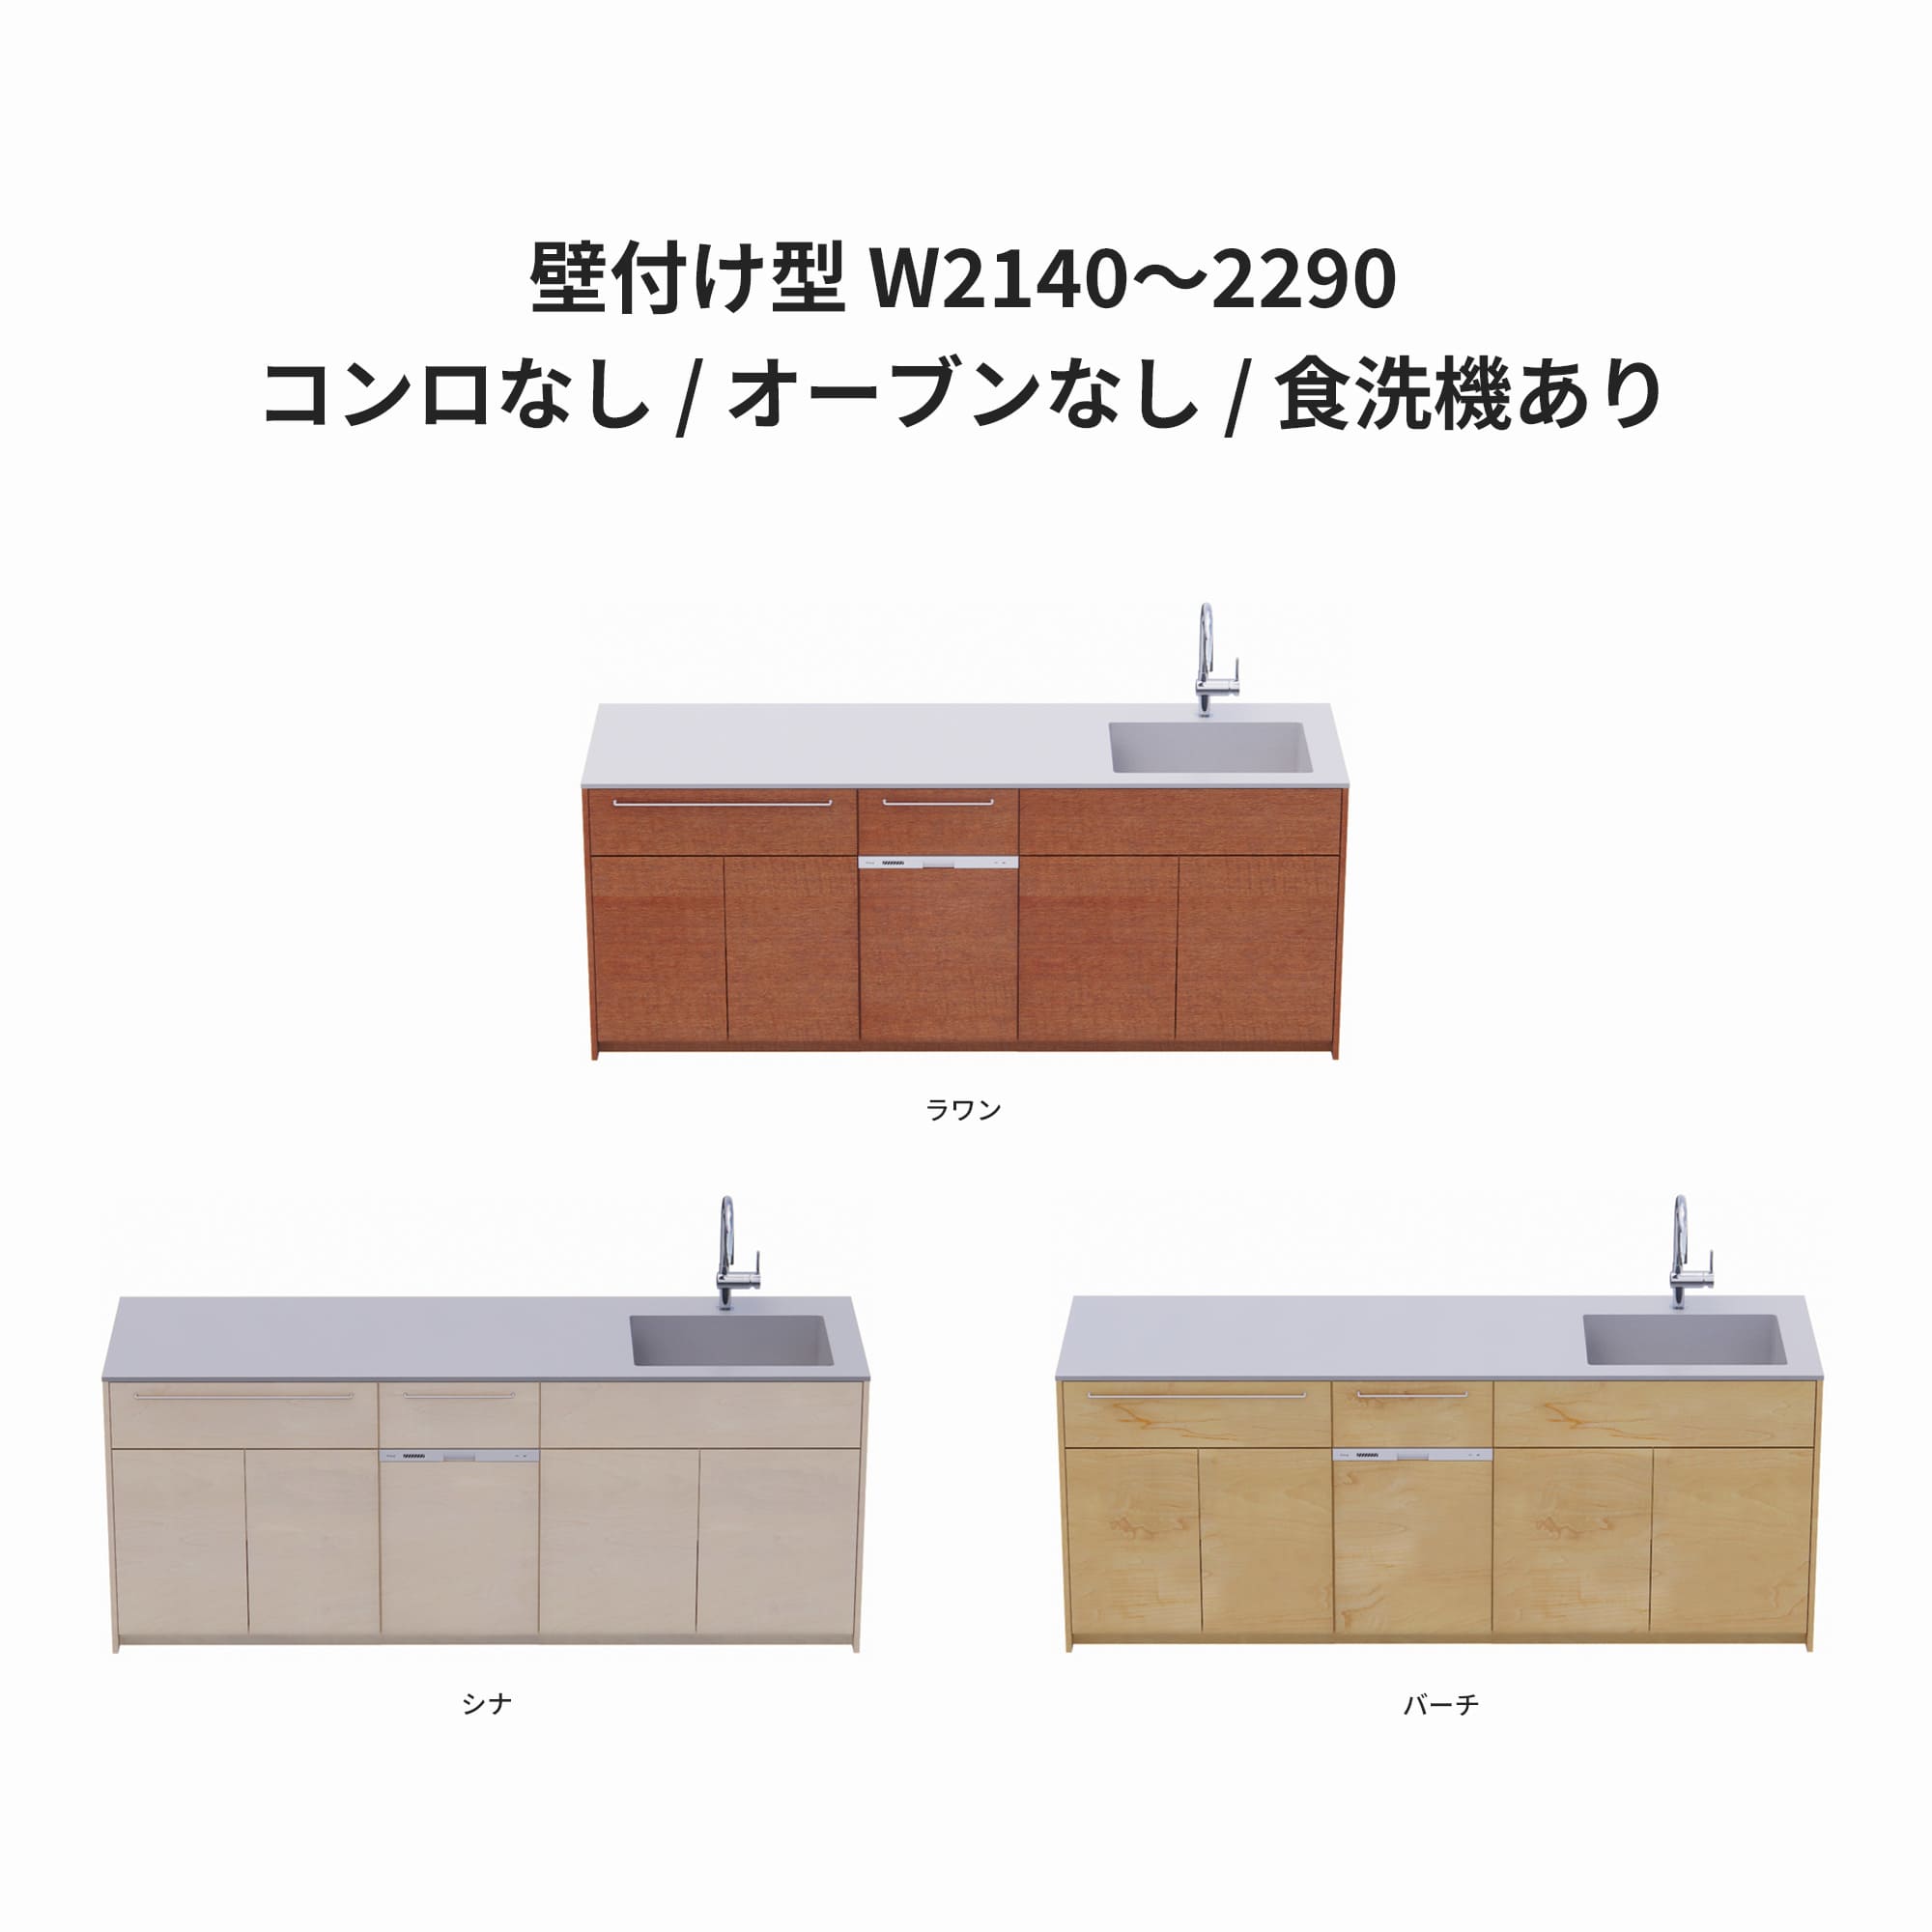 木製システムキッチン 壁付け型 W2140～2290・コンロなし / オーブンなし / 食洗機あり KB-KC022-21-G183 ラワン・シナ・バーチが選択できます